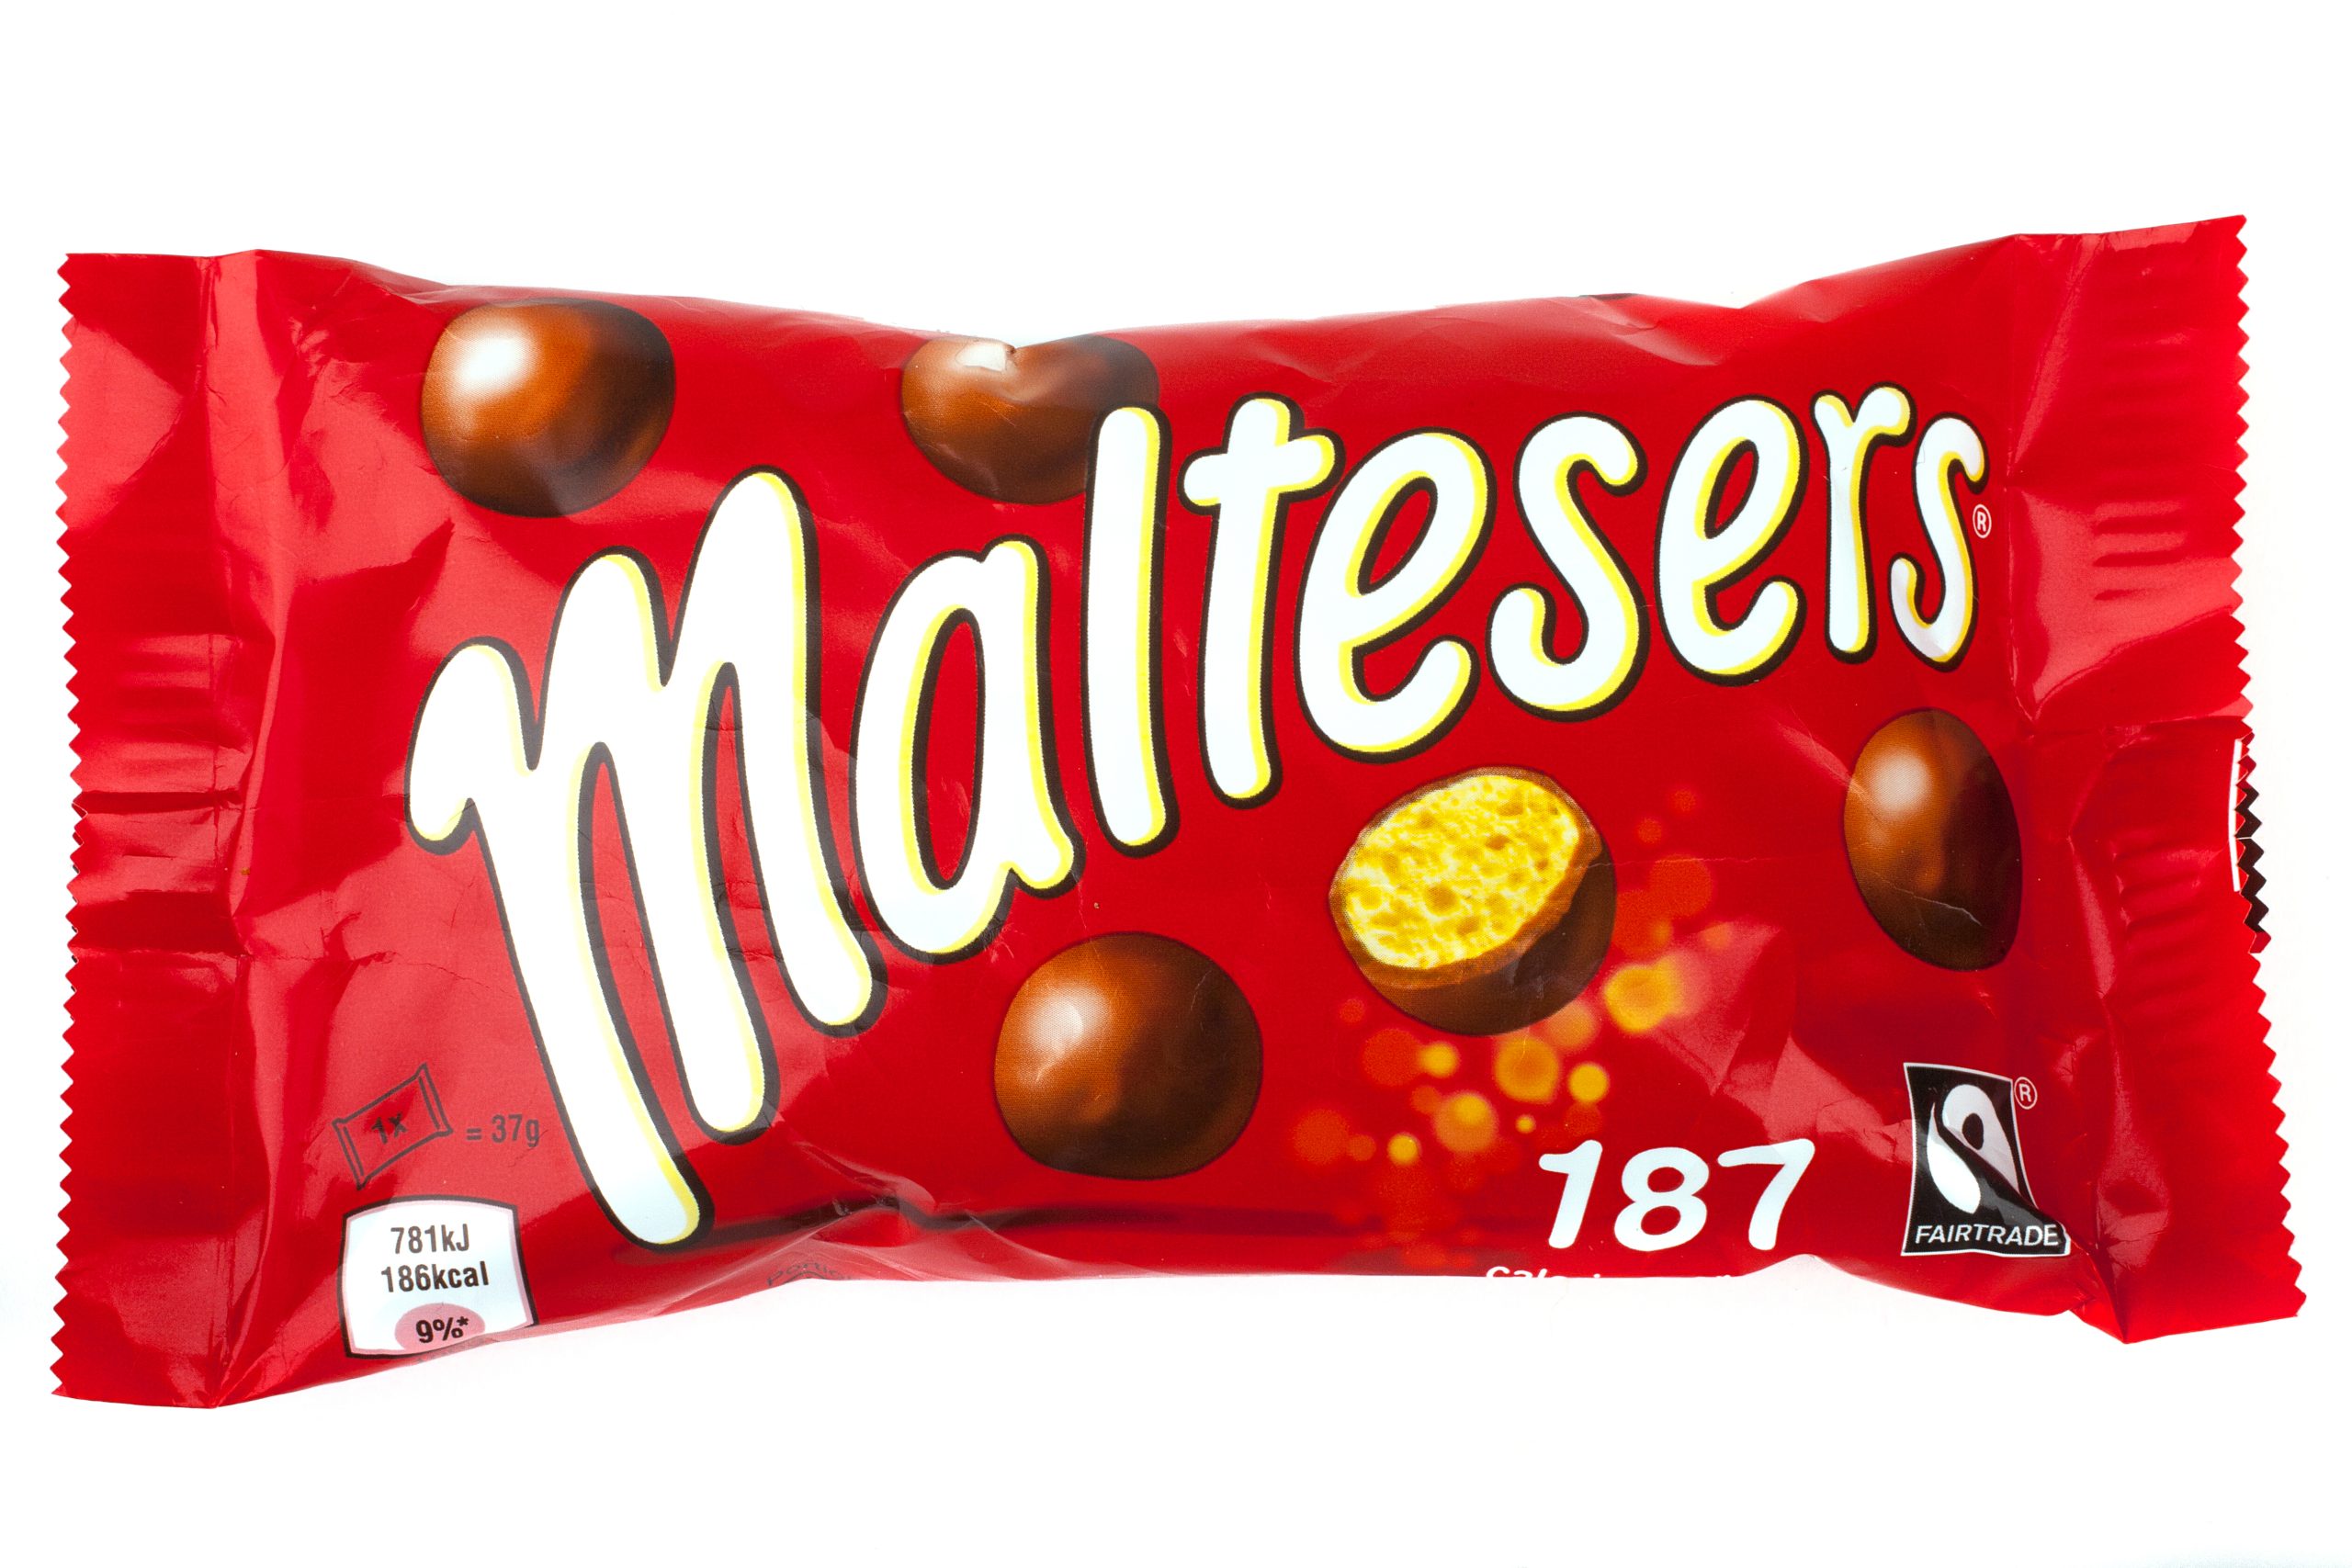 Maltesers e chocolates Galaxy podem estar contaminados com salmonela